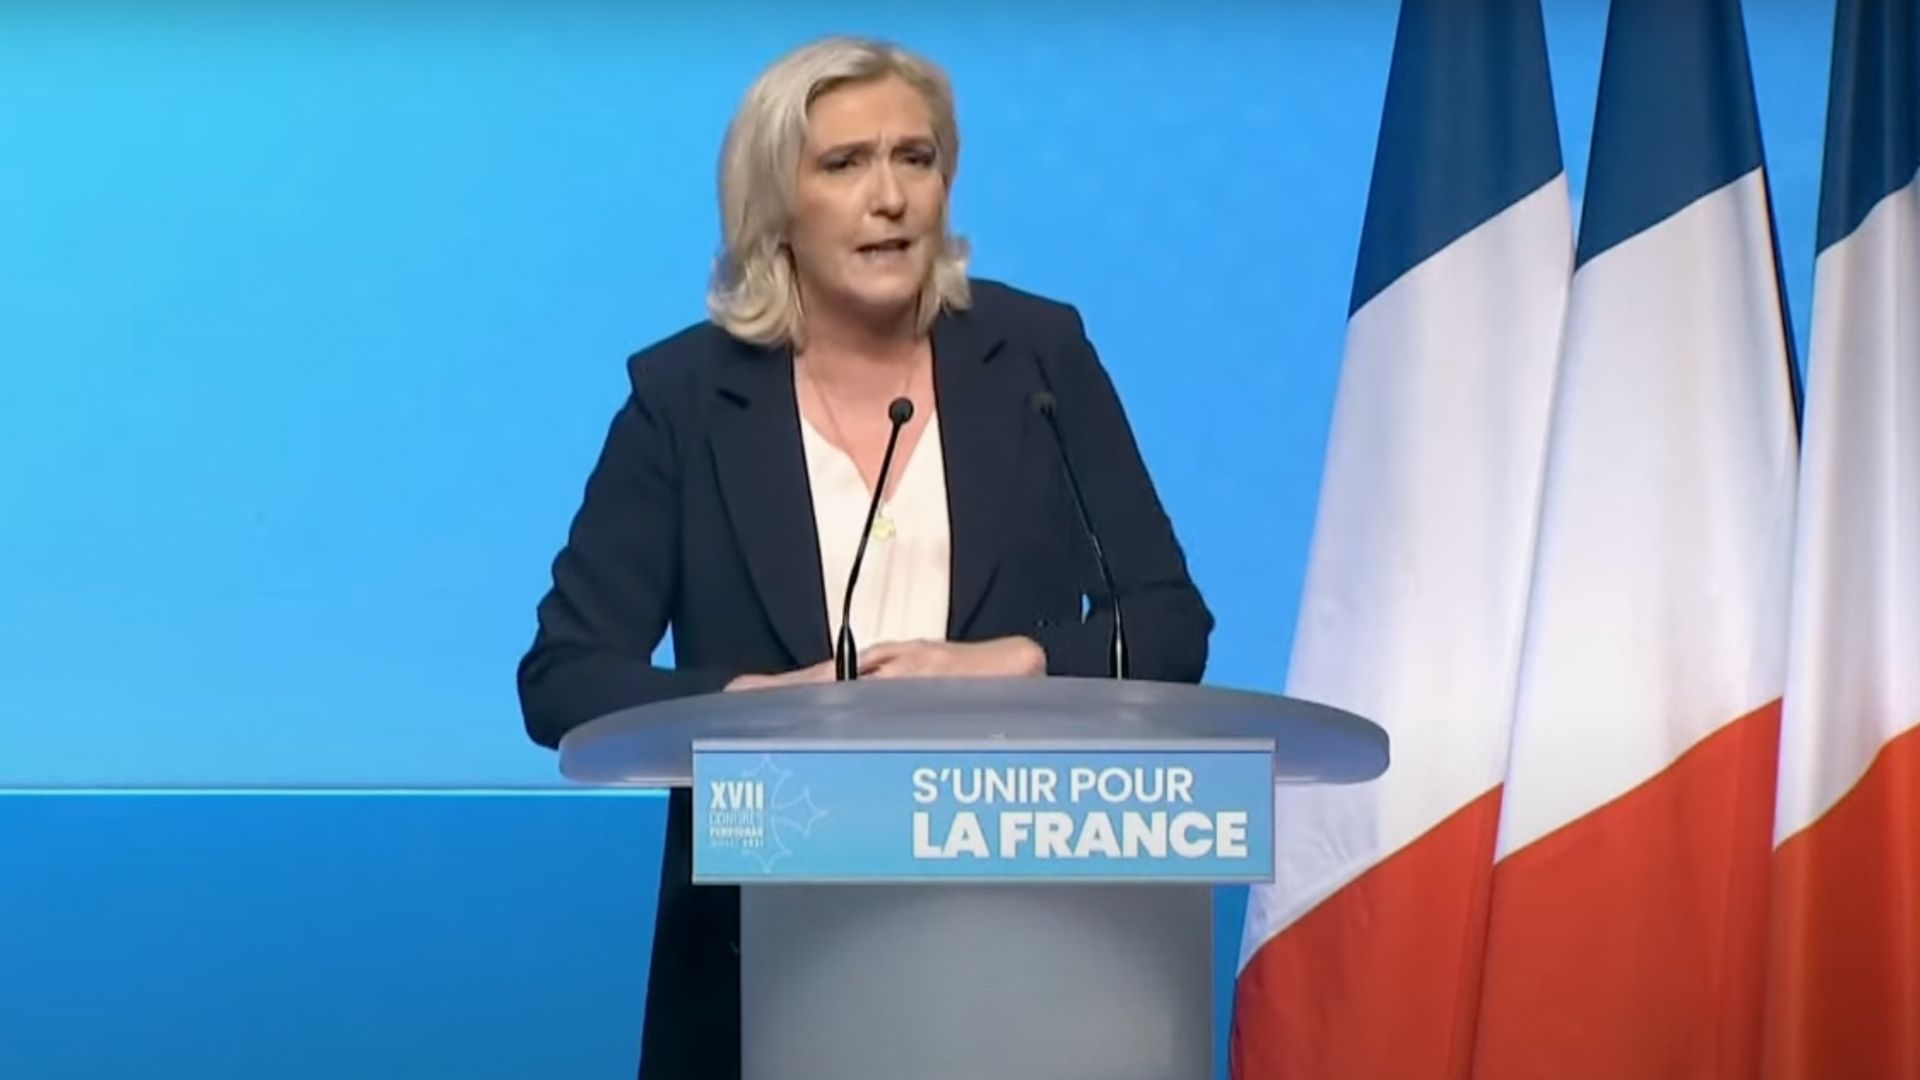 Contrairement à ce que croit 1 Française sur 2, non, Marine Le Pen n’est pas féministe